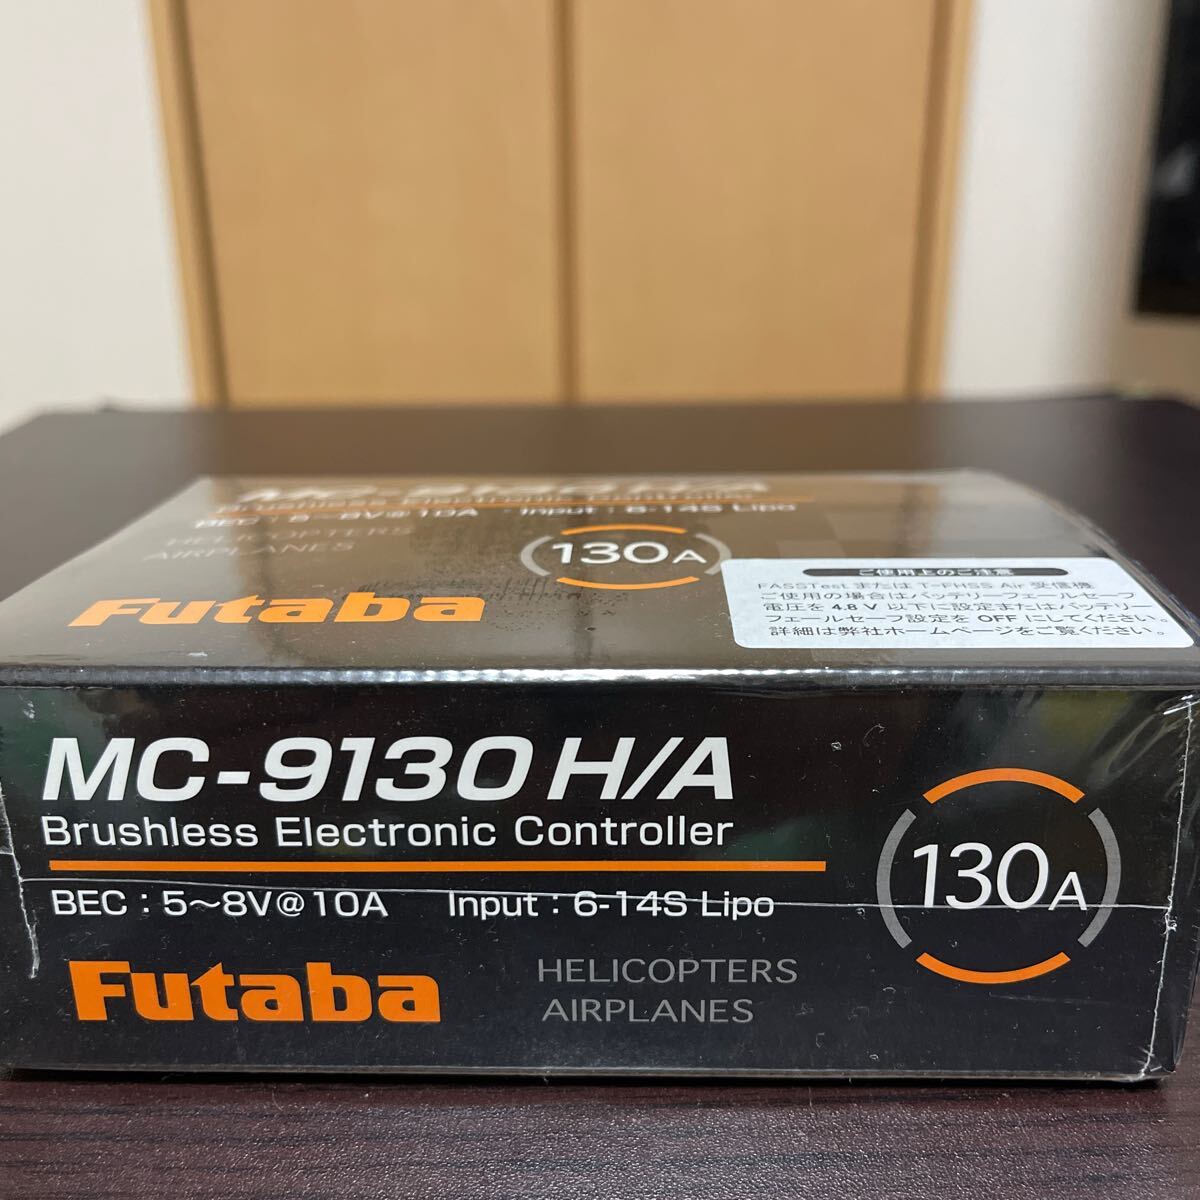  Futaba MC-9130H/A